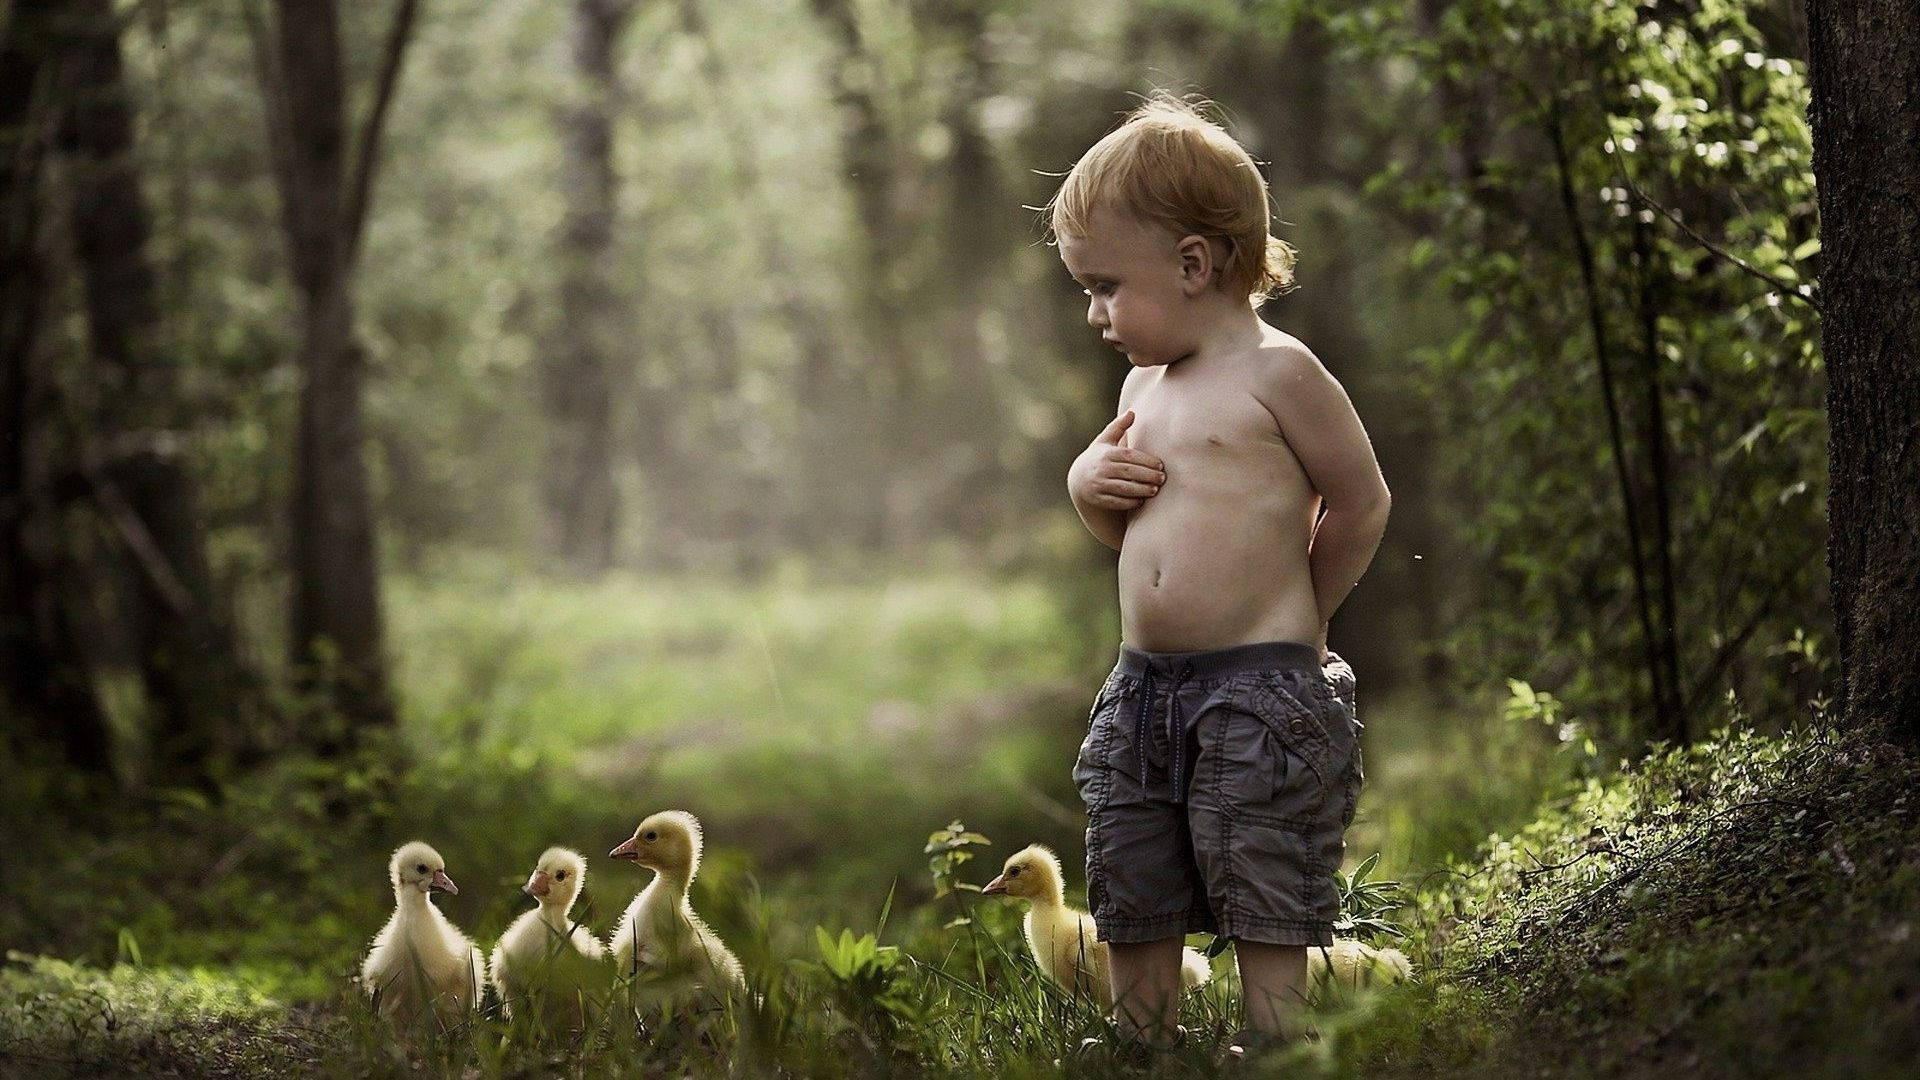 Baby Ducks In Woods